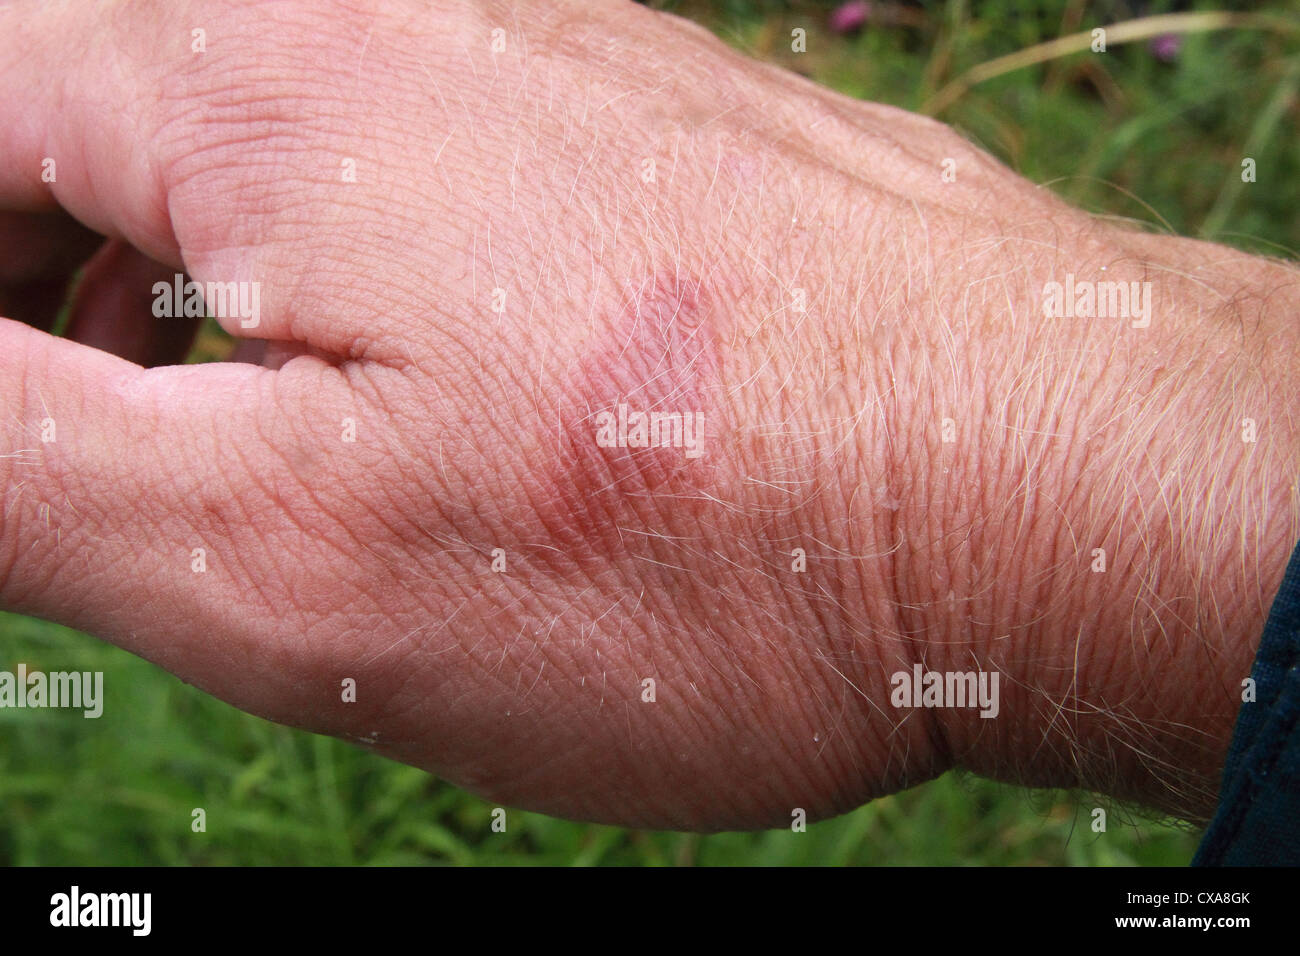 Kaukasischen Mann Hand zeigt eine verbrennen Mark Verletzung seiner Haut Modell freigegeben Stockfoto